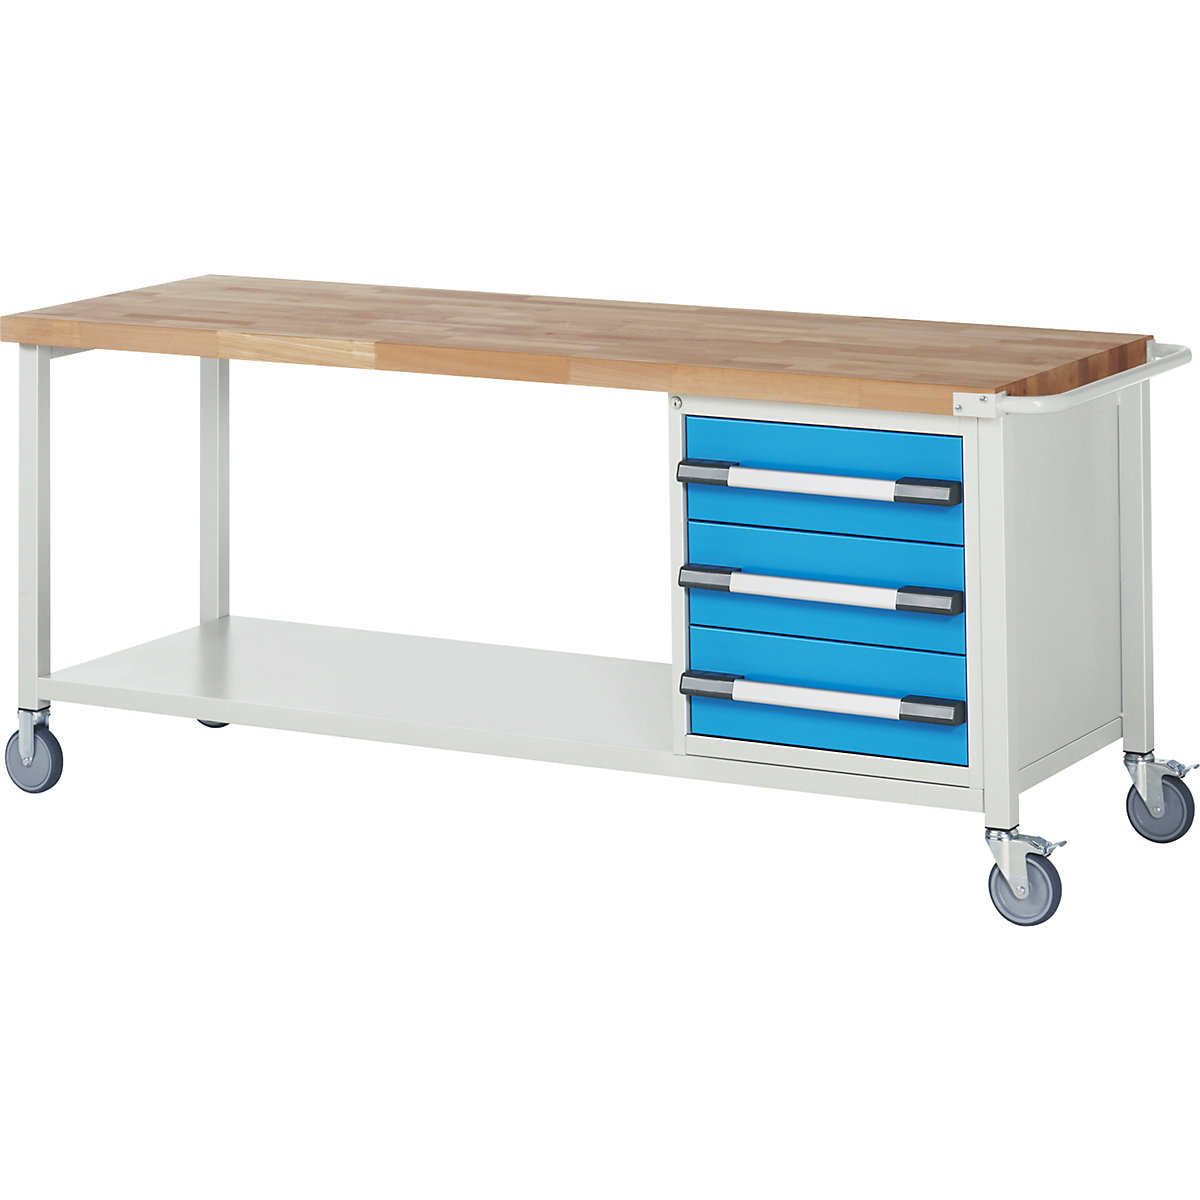 Series 8 mobile workbench, frame system – eurokraft pro, 3 drawers, storage shelf, WxD 2000 x 700 mm-3